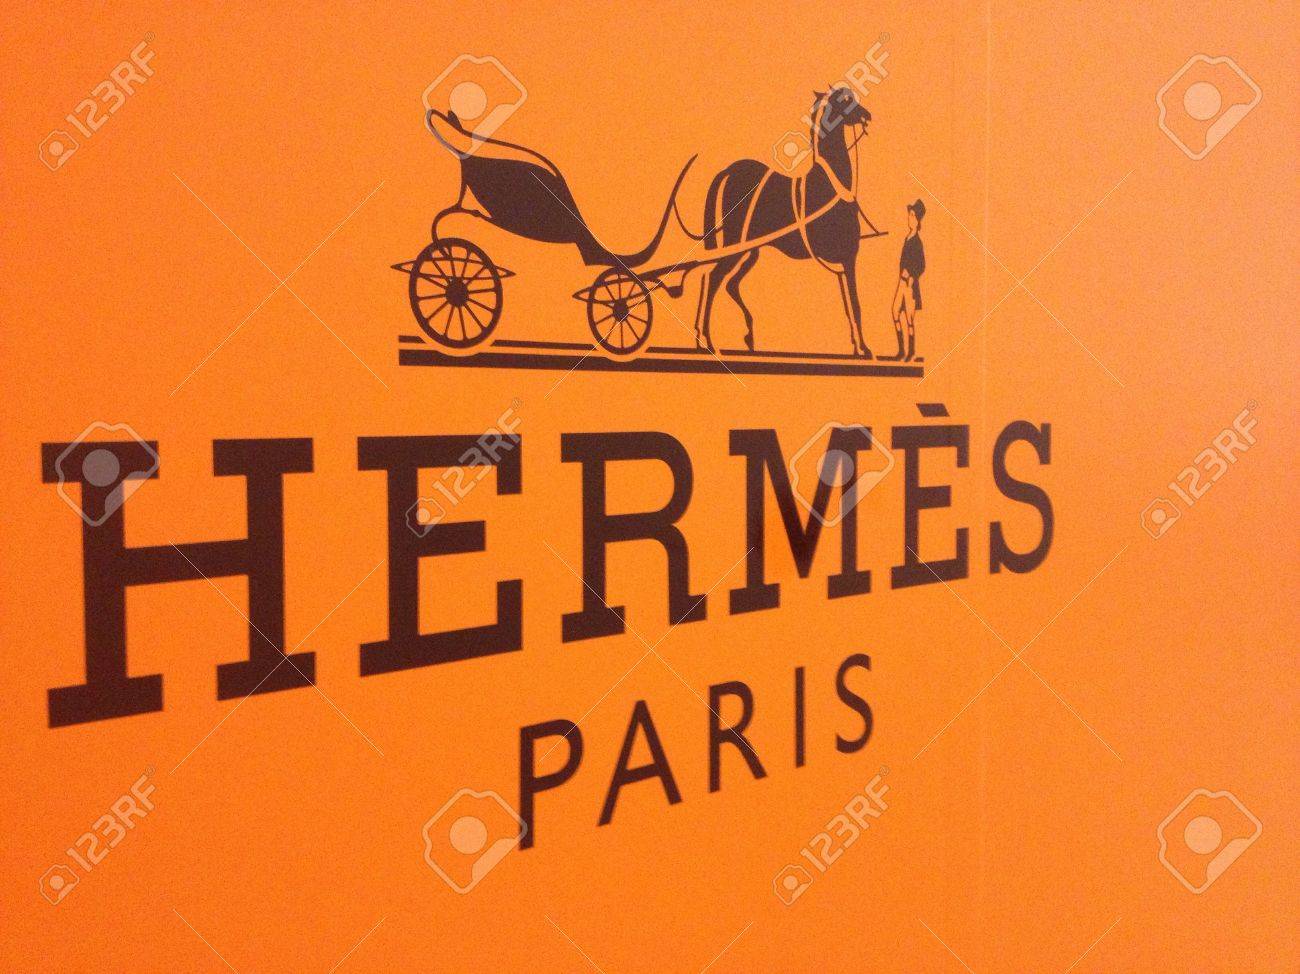 Túi Hermès đắt như vàng, vượt cả đồng hồ Rolex